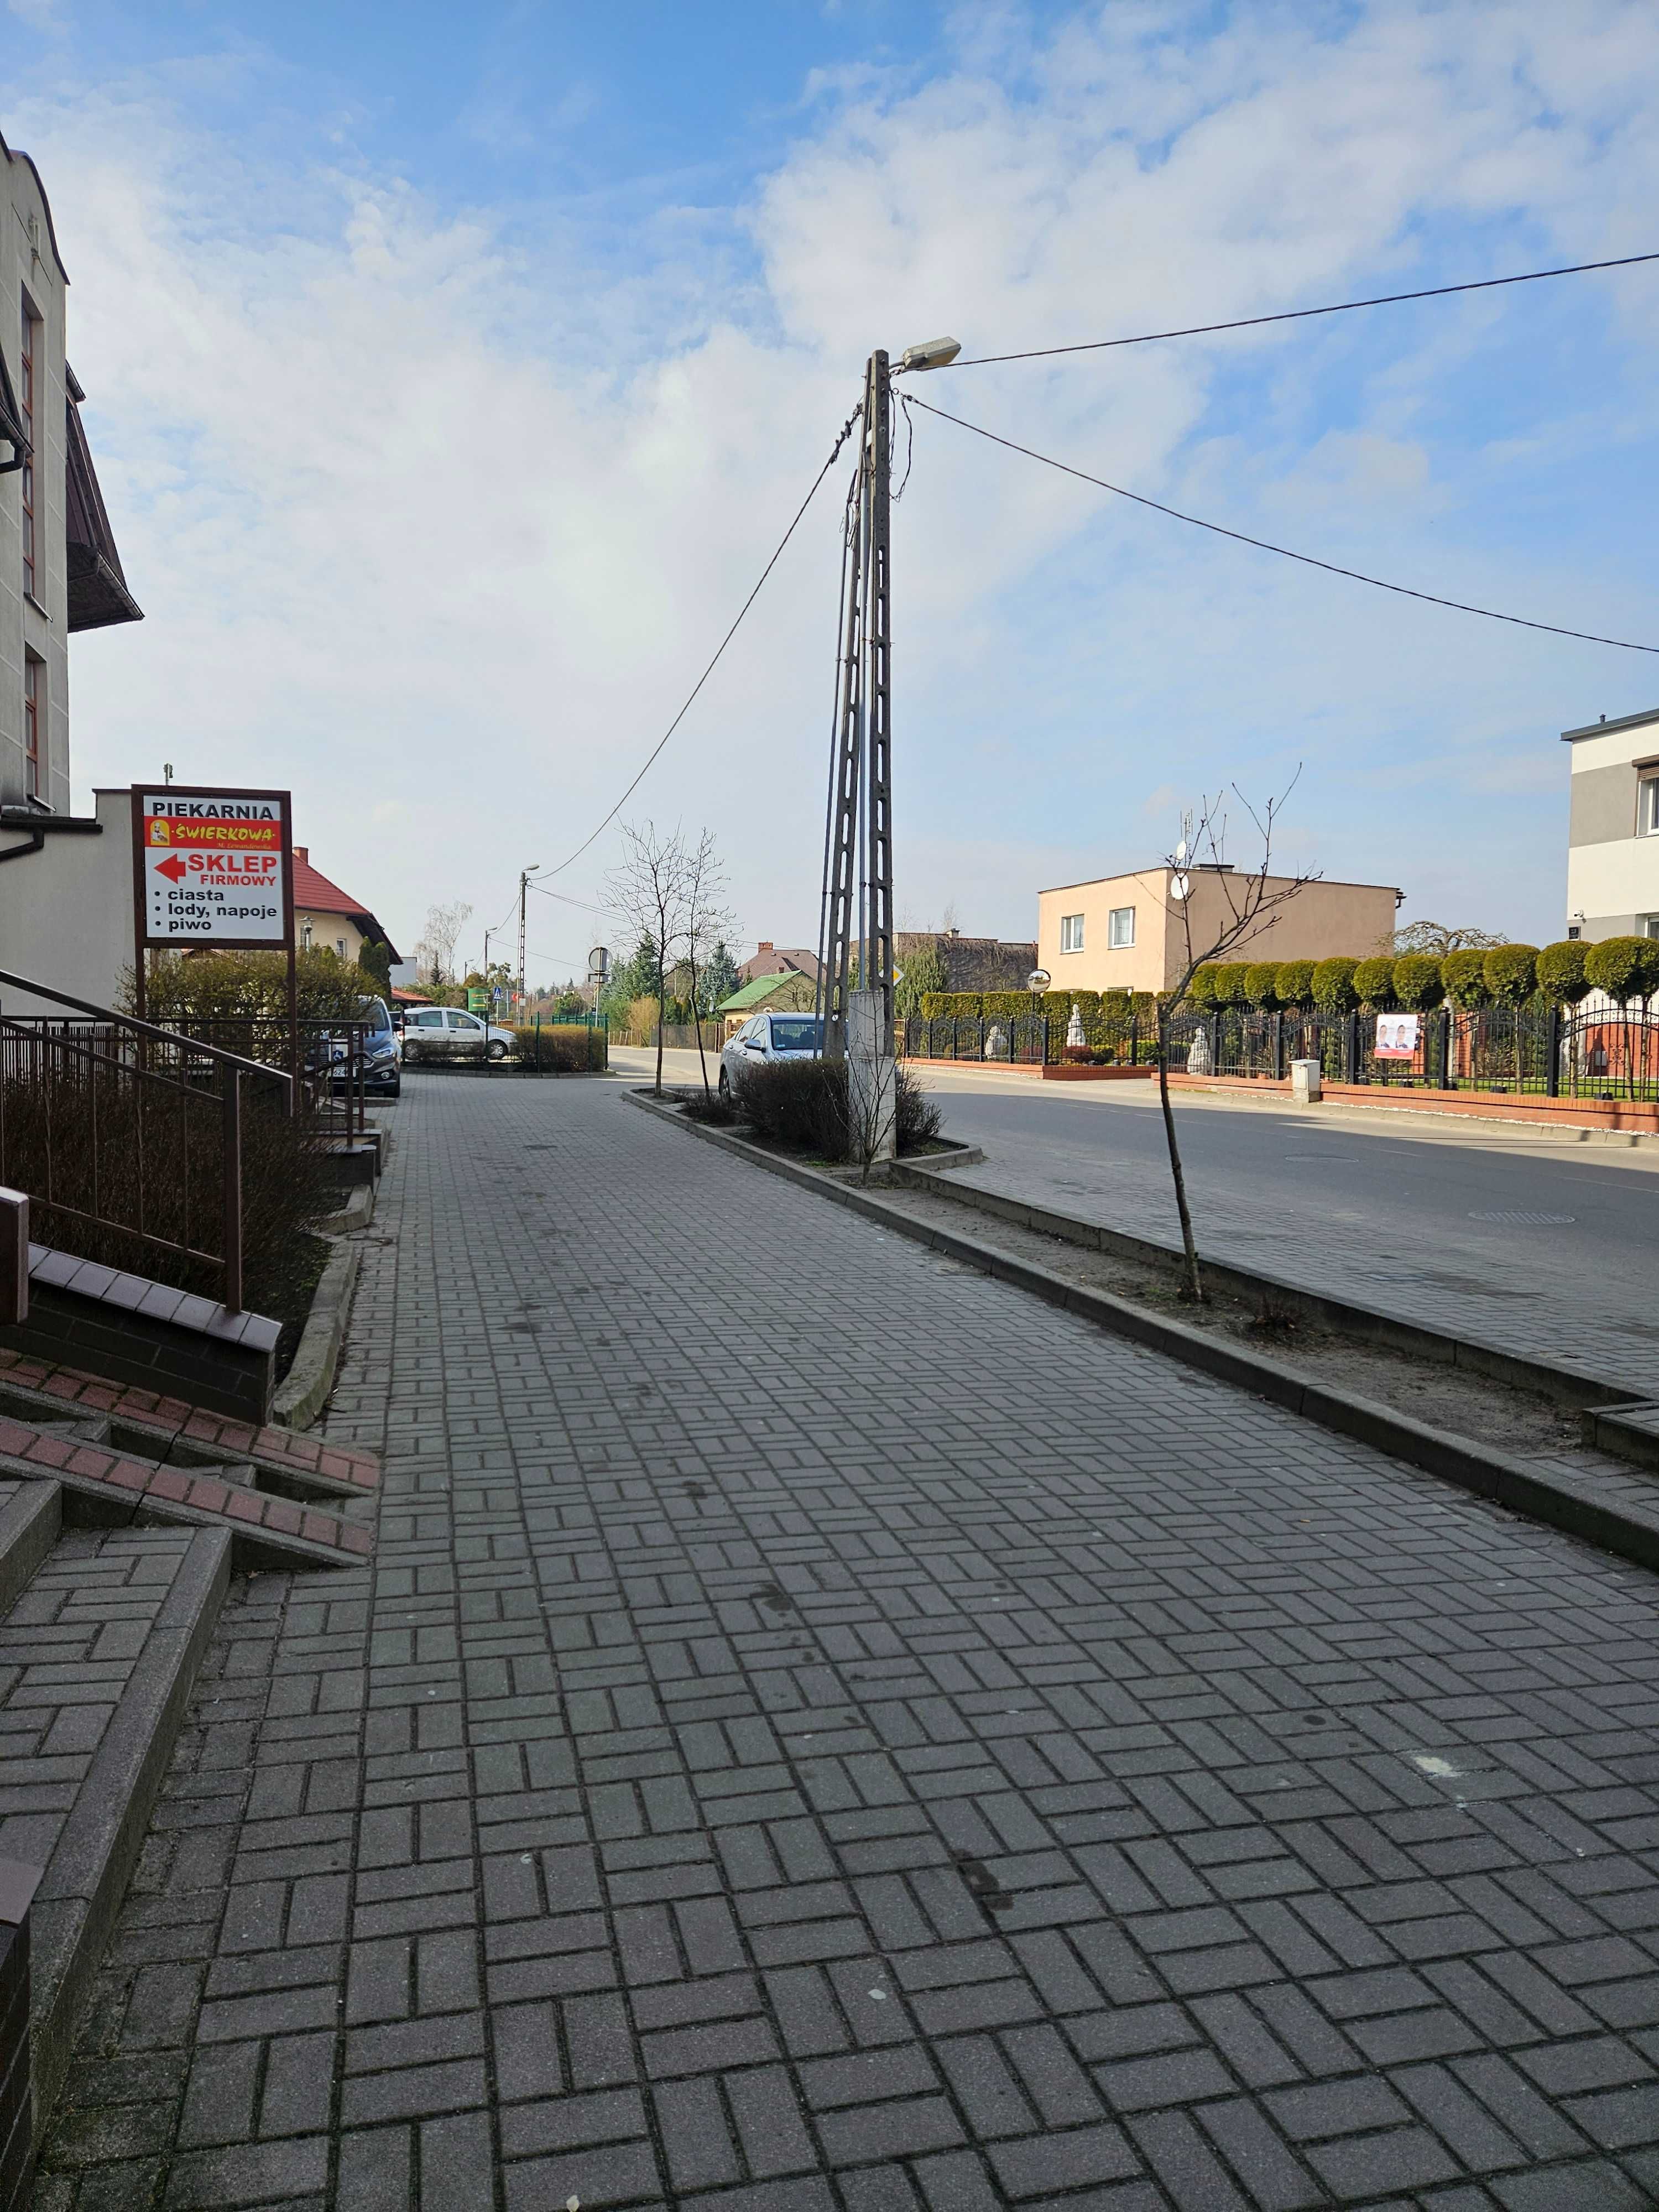 Lokal użytkowy o powierzchni 55 m2 w Brodnicy - 1500 zł brutto/m-c